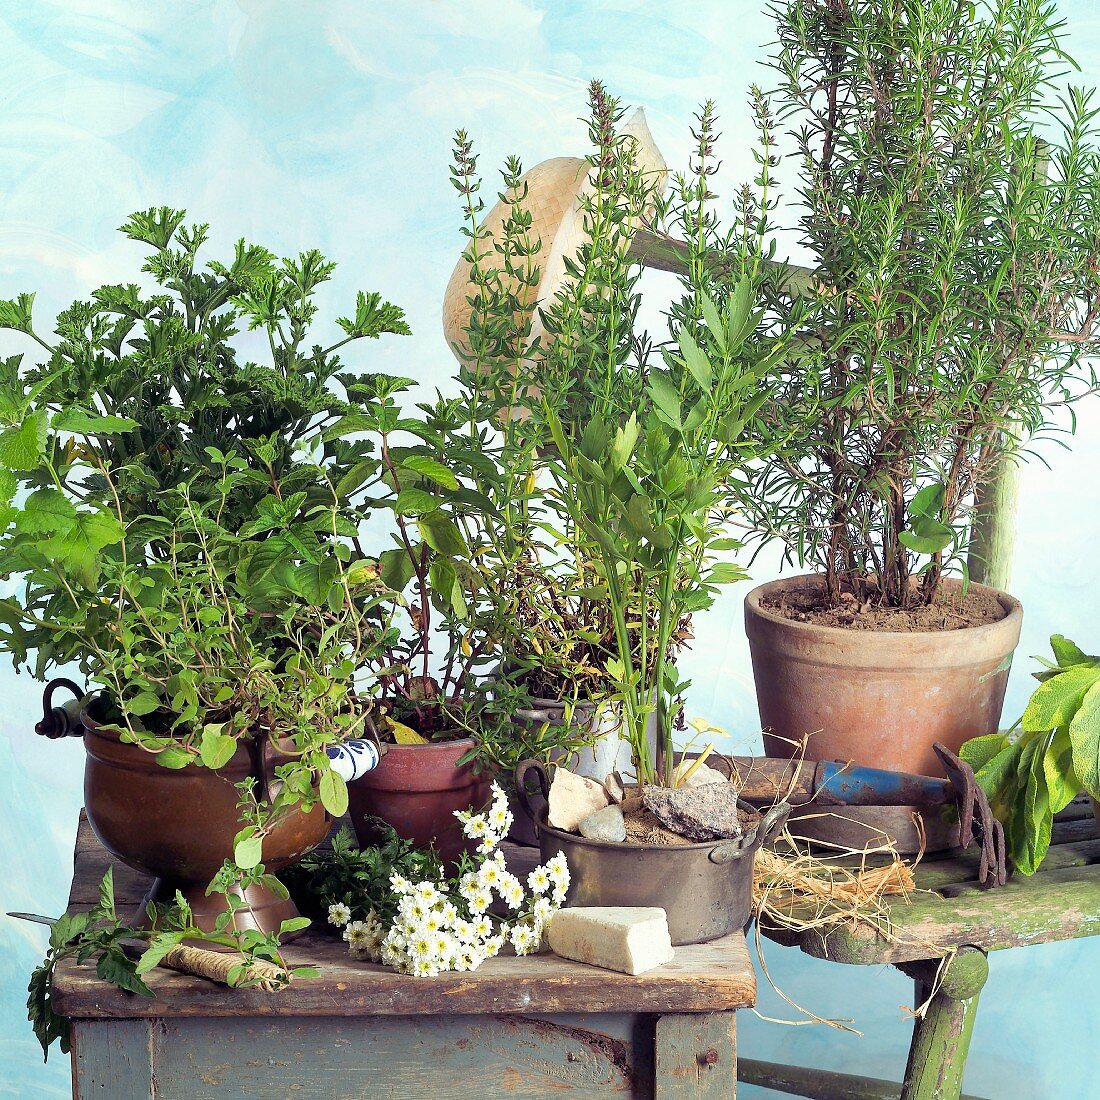 Fresh herbs in flowerpots, garden tools